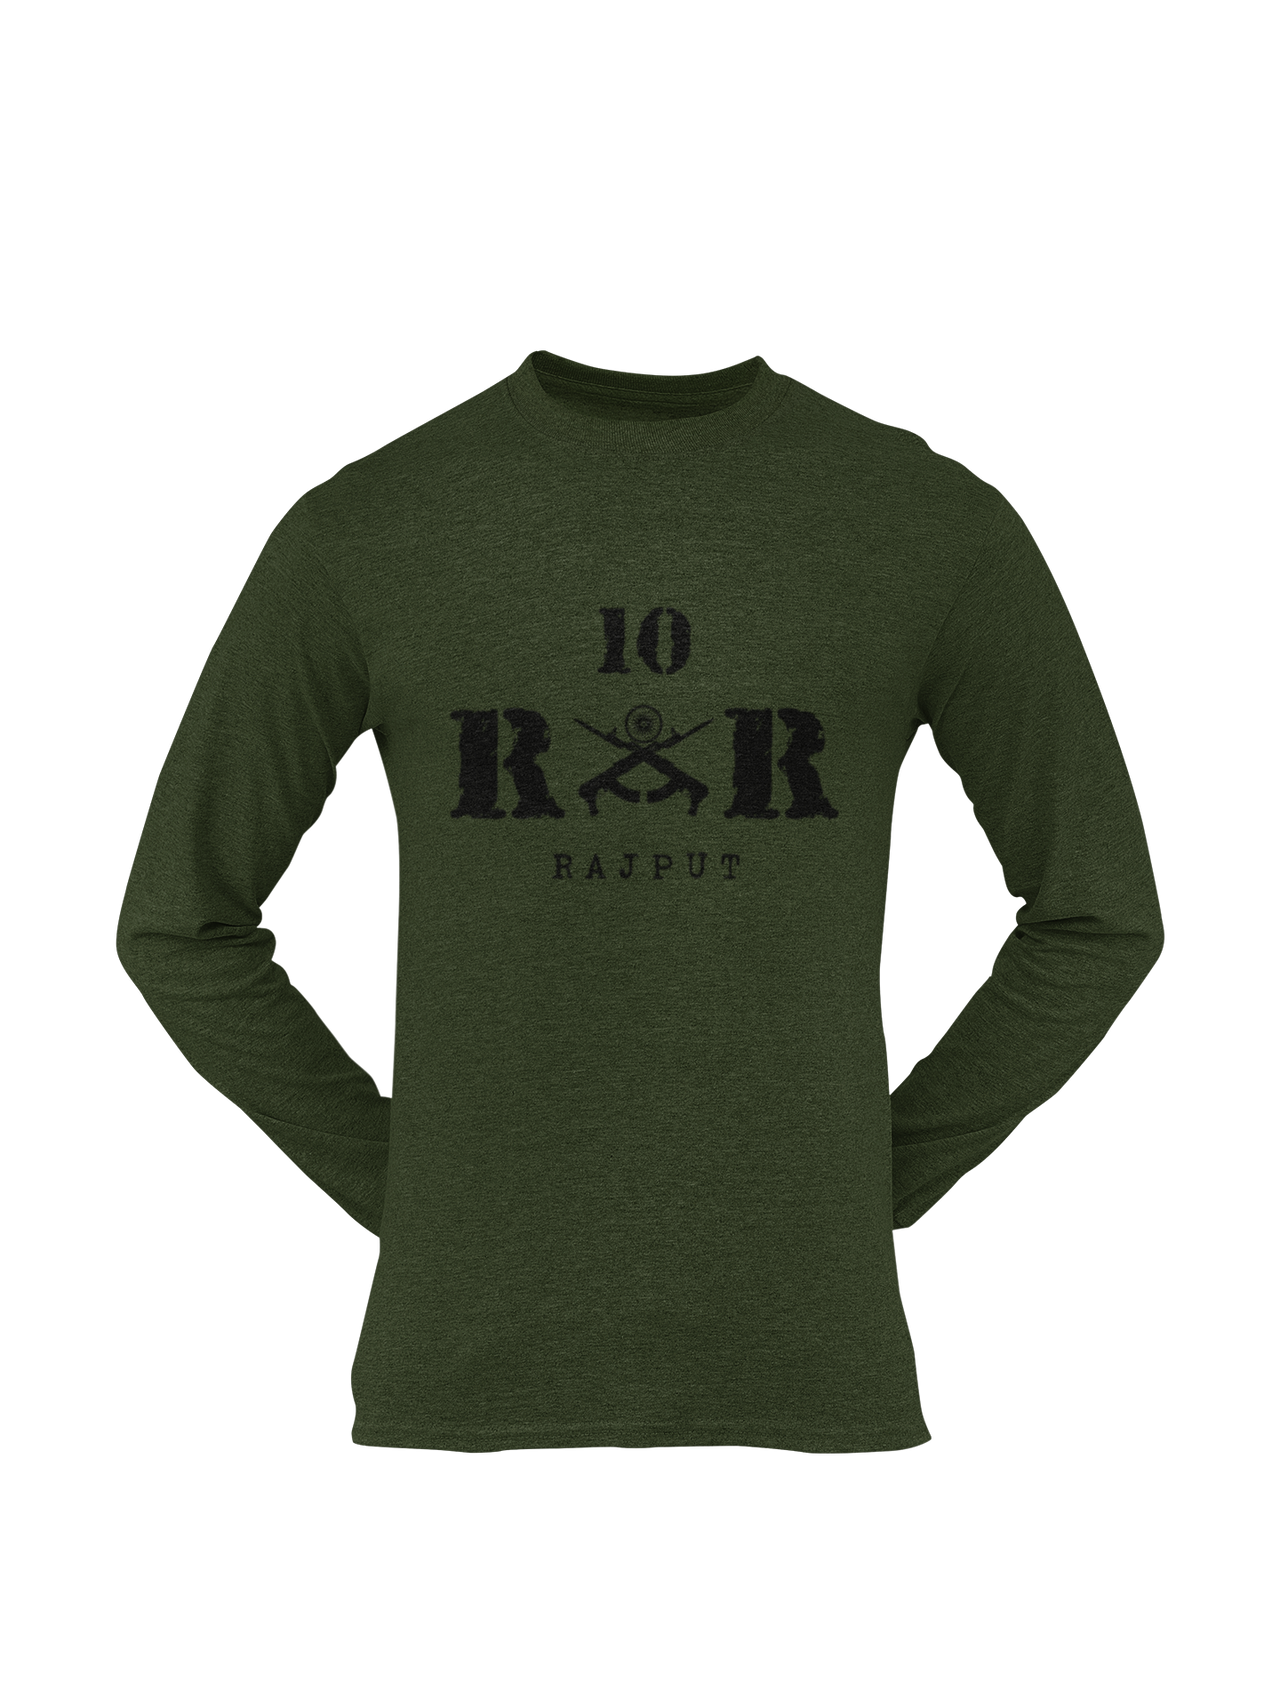 Rashtriya Rifles T-shirt - 10 RR Rajput (Men)